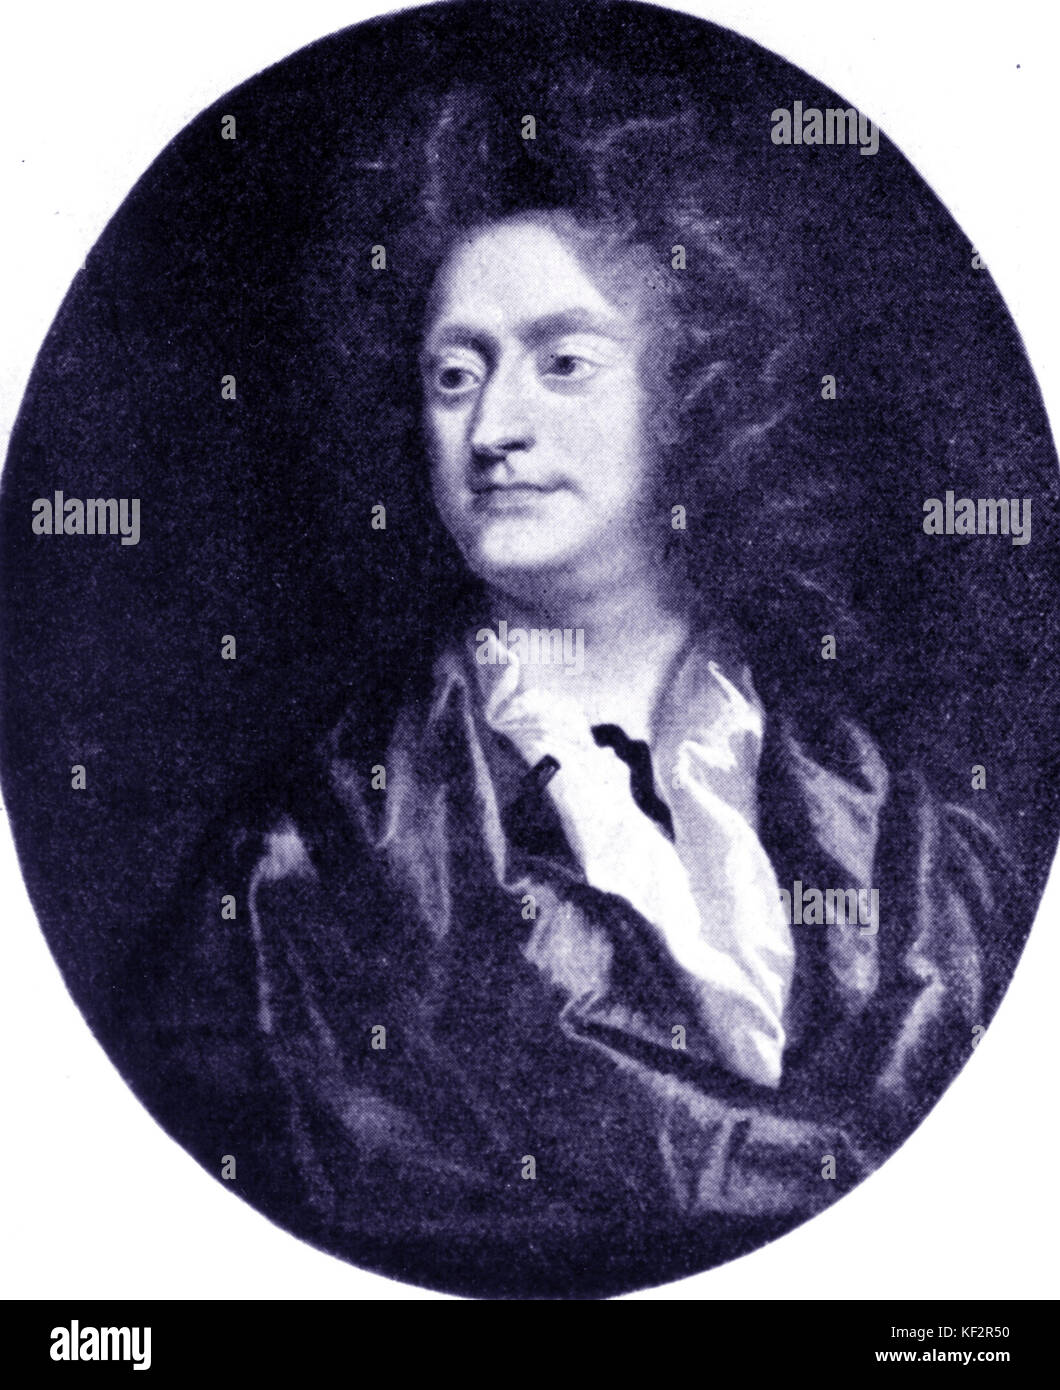 Par Henry Purcell, compositeur anglais Closterman (1659-1695) Banque D'Images